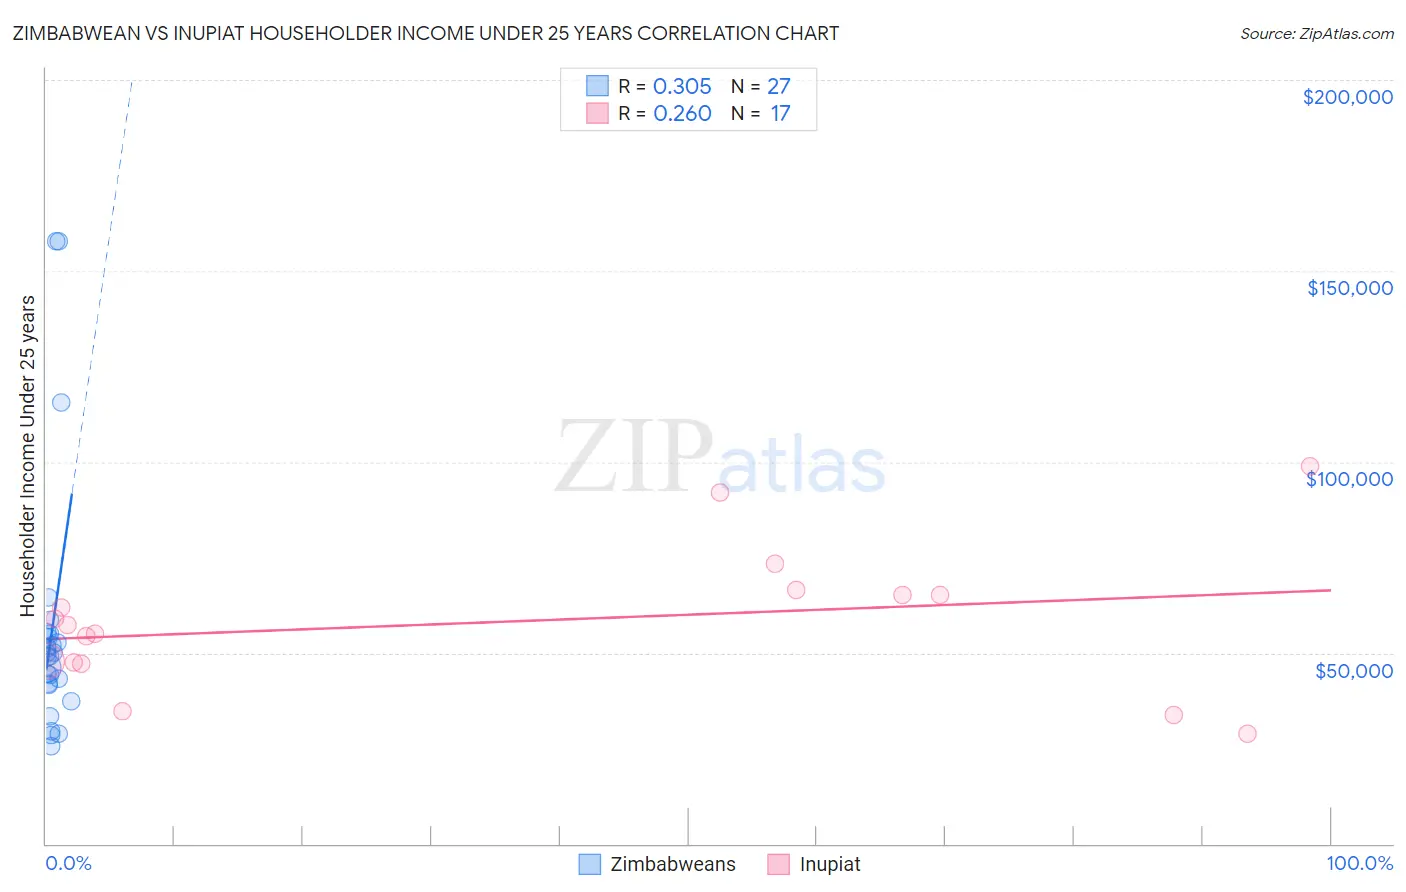 Zimbabwean vs Inupiat Householder Income Under 25 years